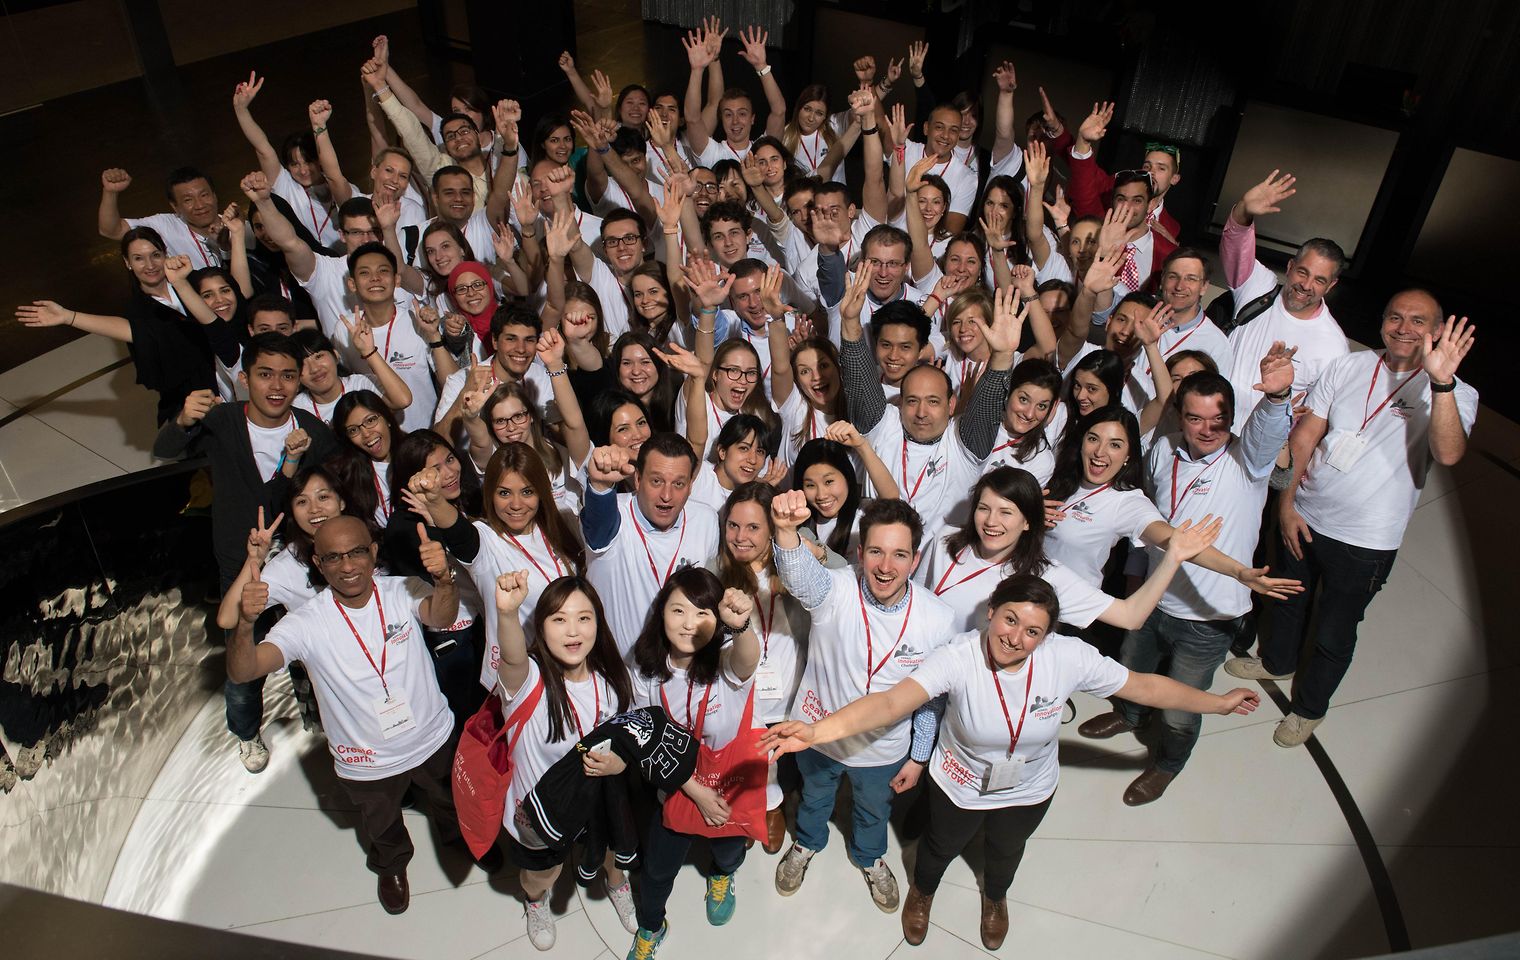 
Studententeams aus 23 Ländern nahmen am Finale der Henkel Innovation Challenge in Wien teil